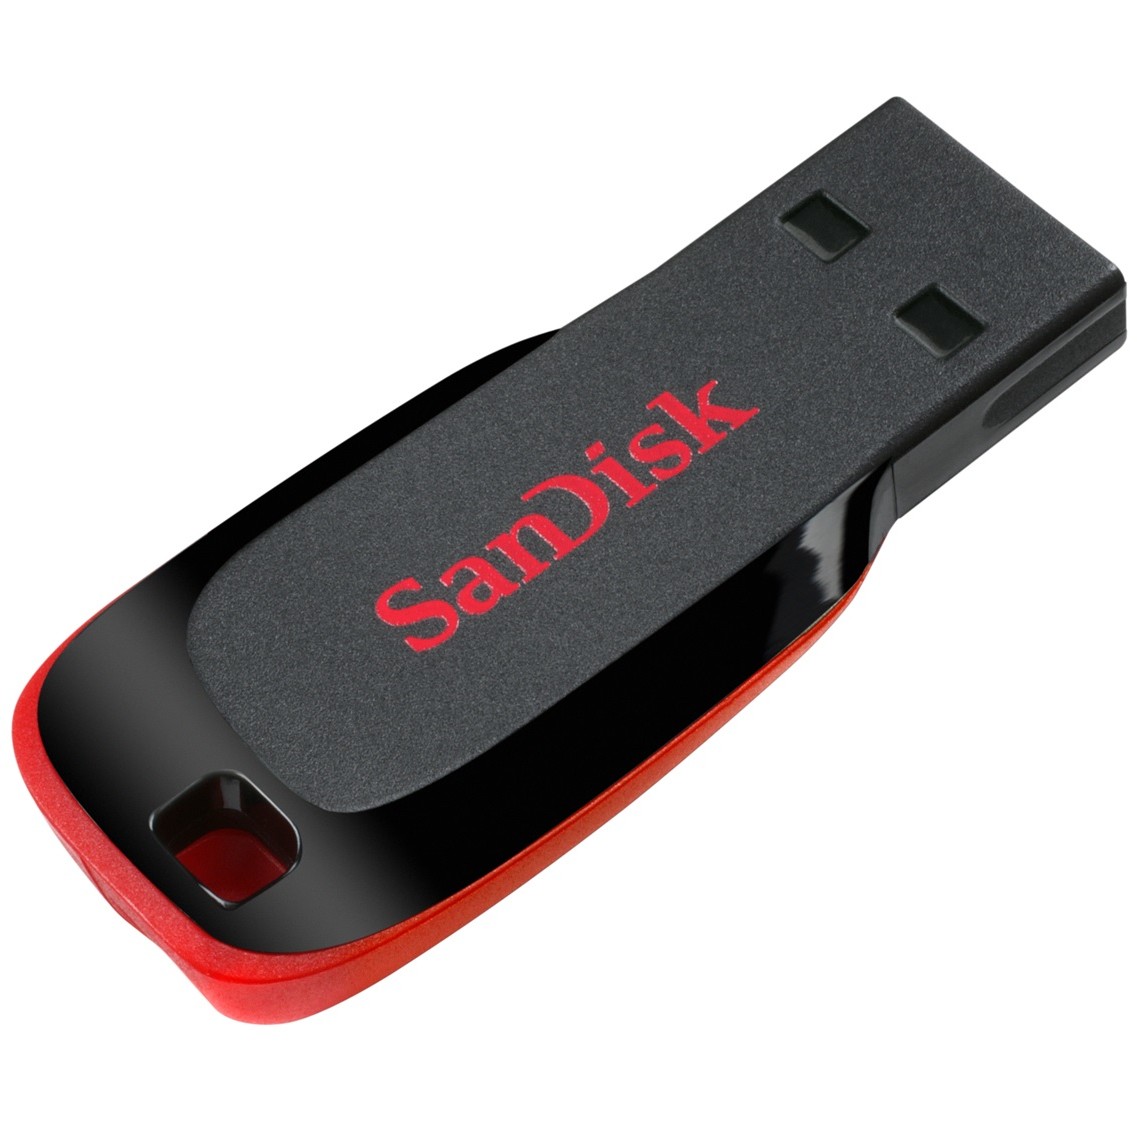 Sandisk SDCZ50-032G-B35, USB-Stick, SanDisk Cruzer Blade  (BILD6)